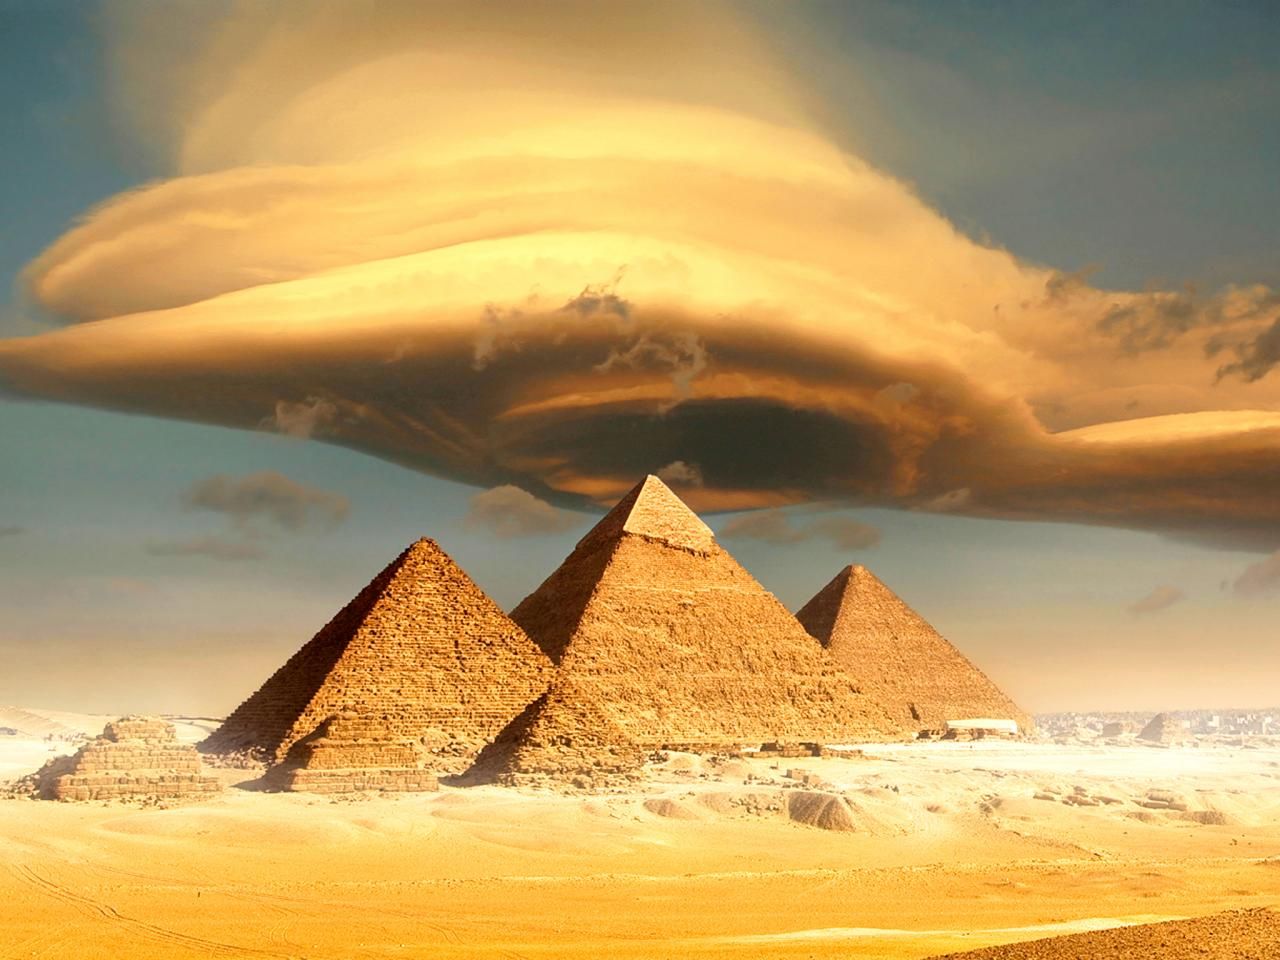 Who Built the Pyramids?